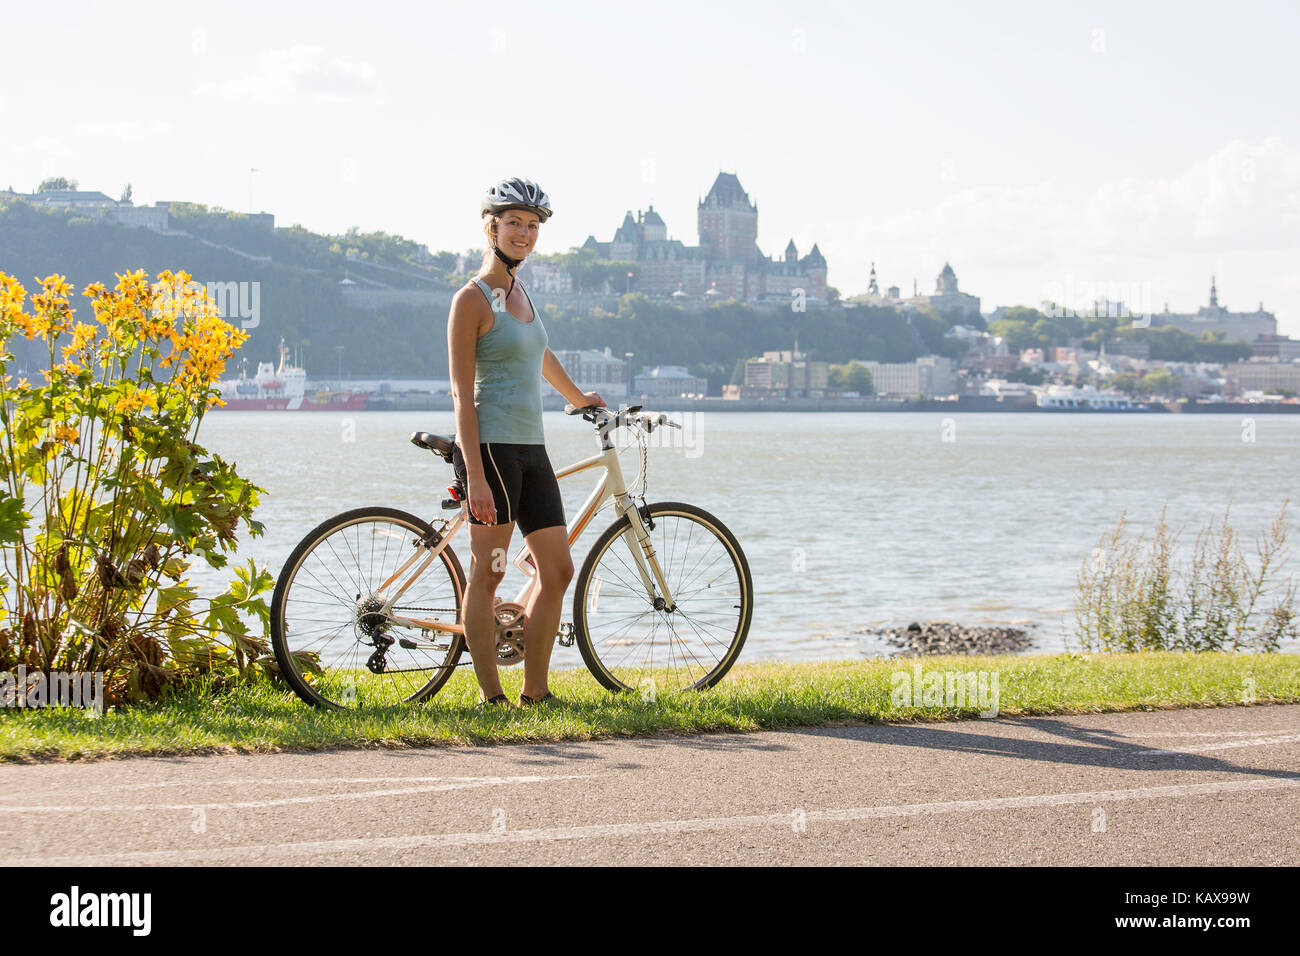 Junge Frau Reiten Fahrrad ausserhalb mit Quebec anzeigen Stockfoto